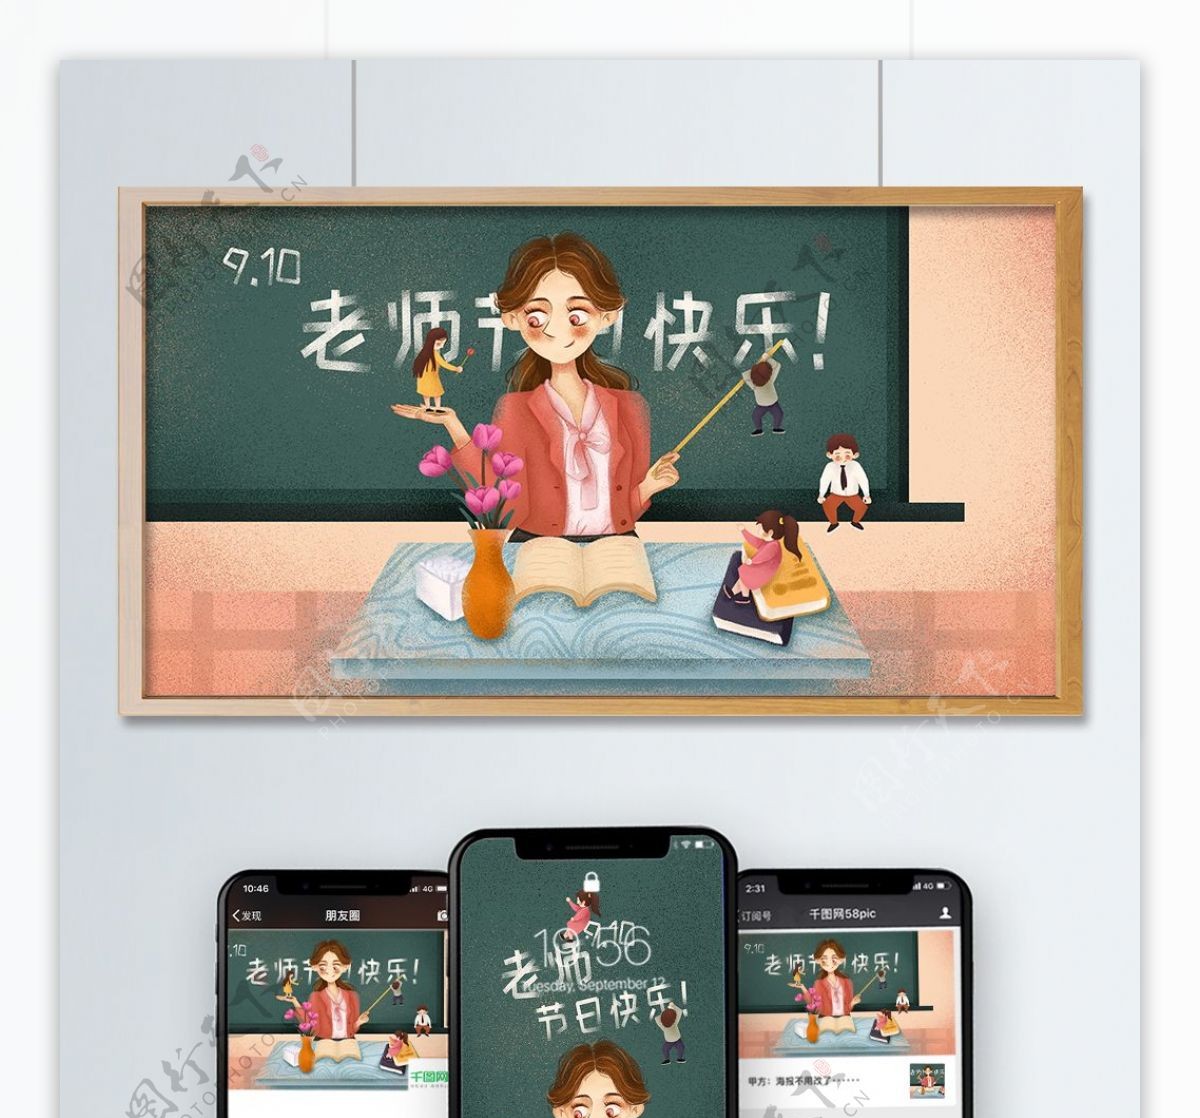 教师节老师节日快乐原创插画海报